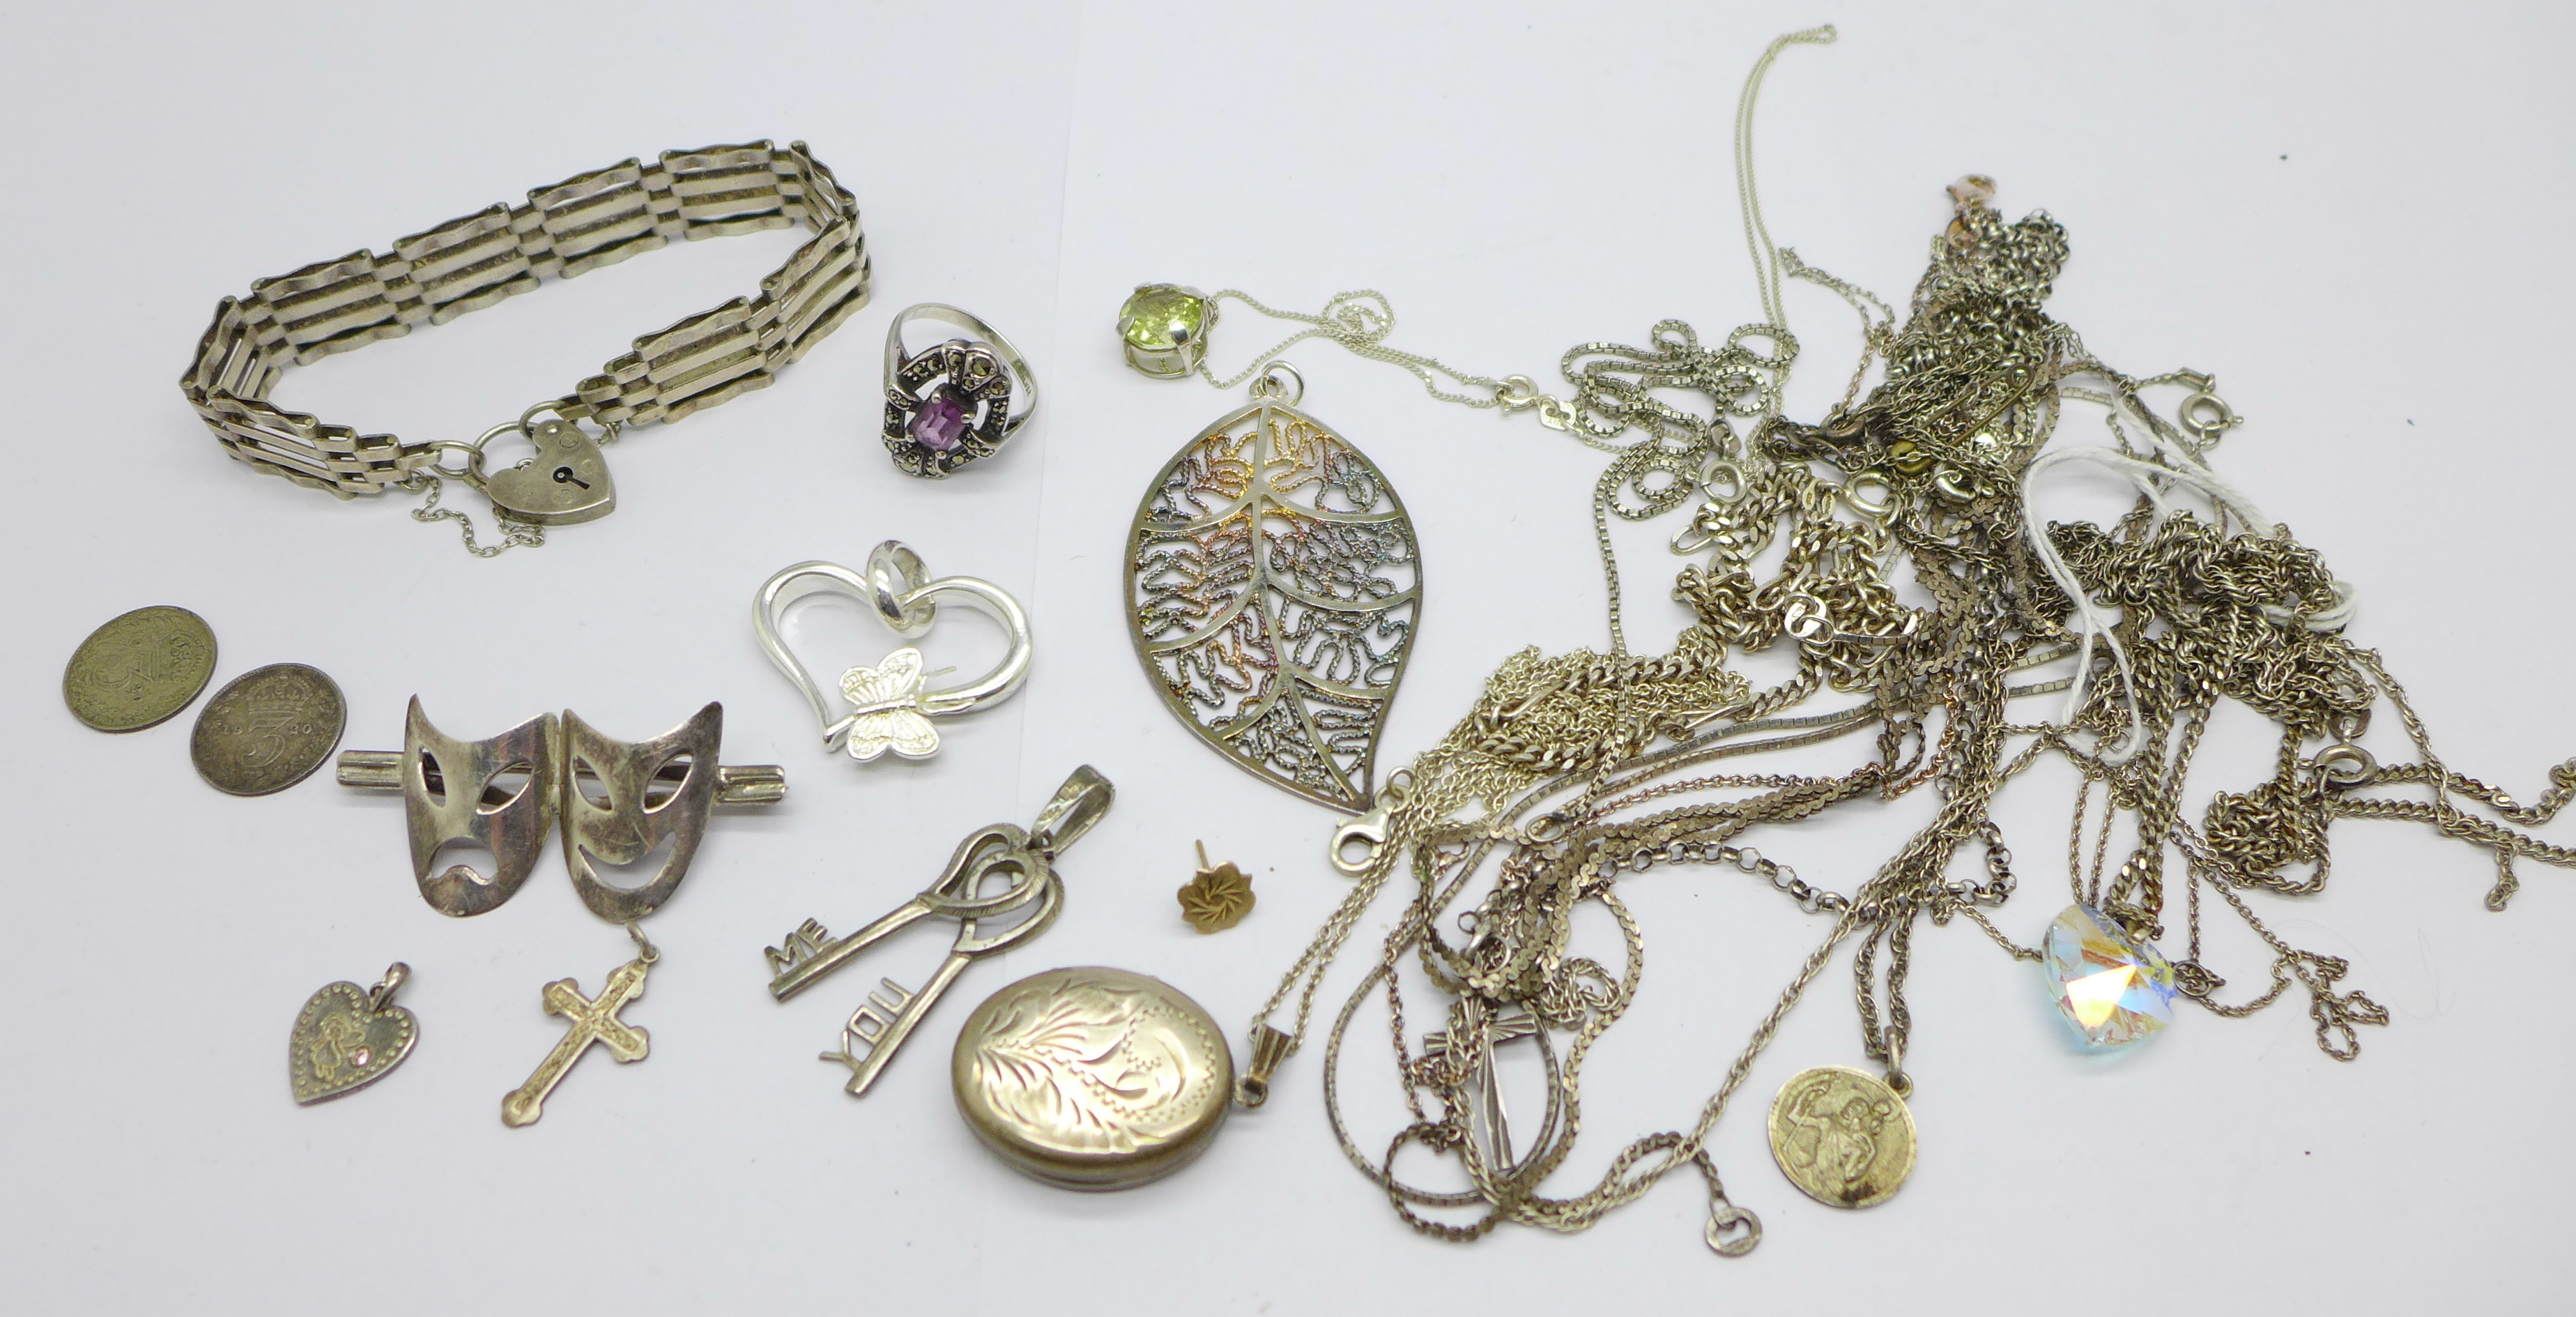 Jewellery including a silver gate bracelet, a silver locket, a 925 silver mask brooch, silver